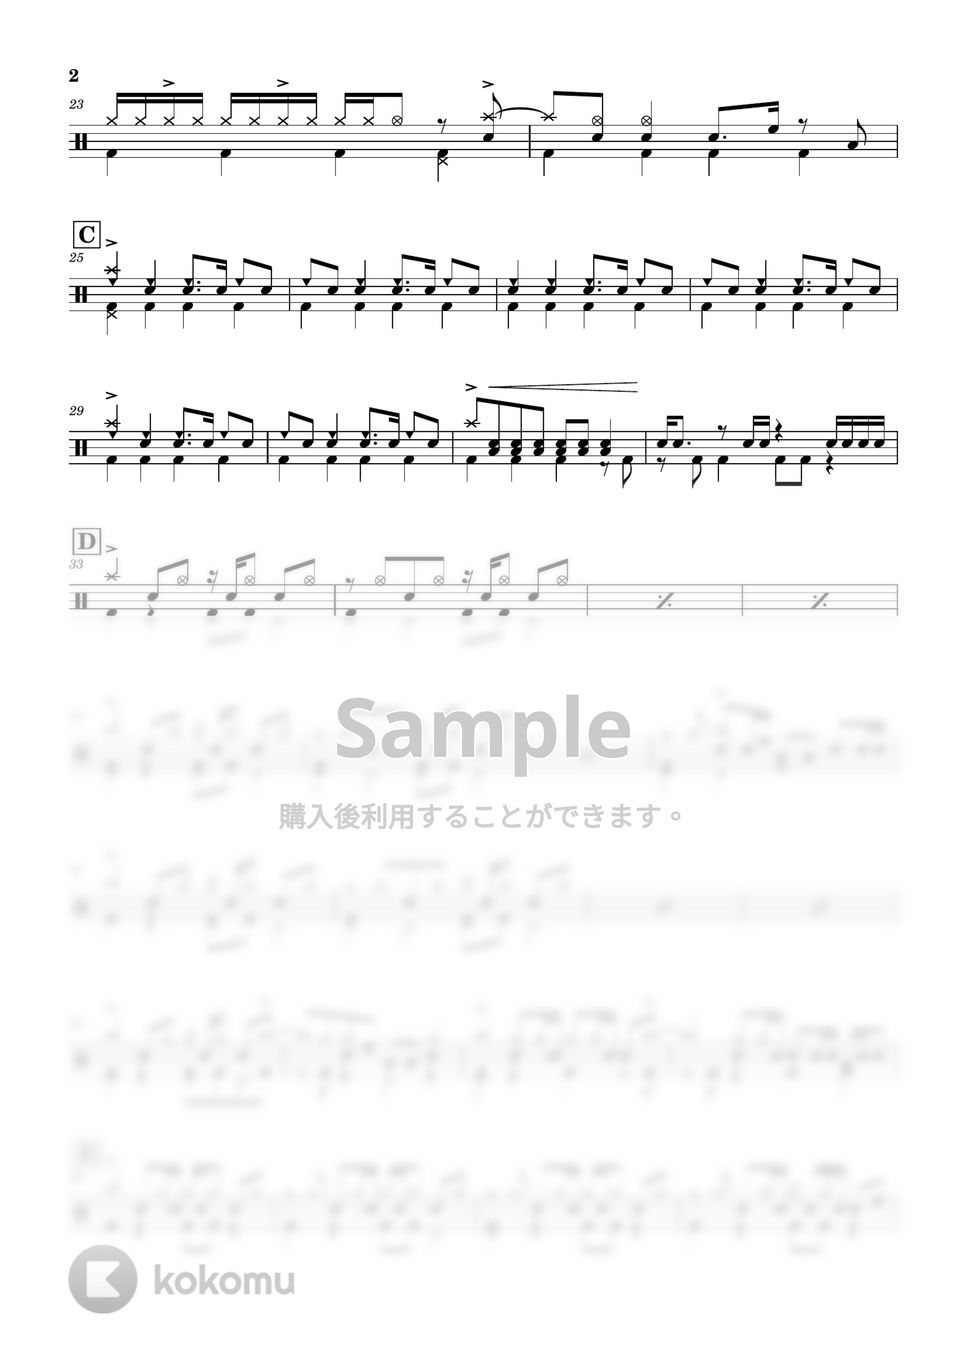 緑黄色社会 - Mela! by Cookie's Drum Score